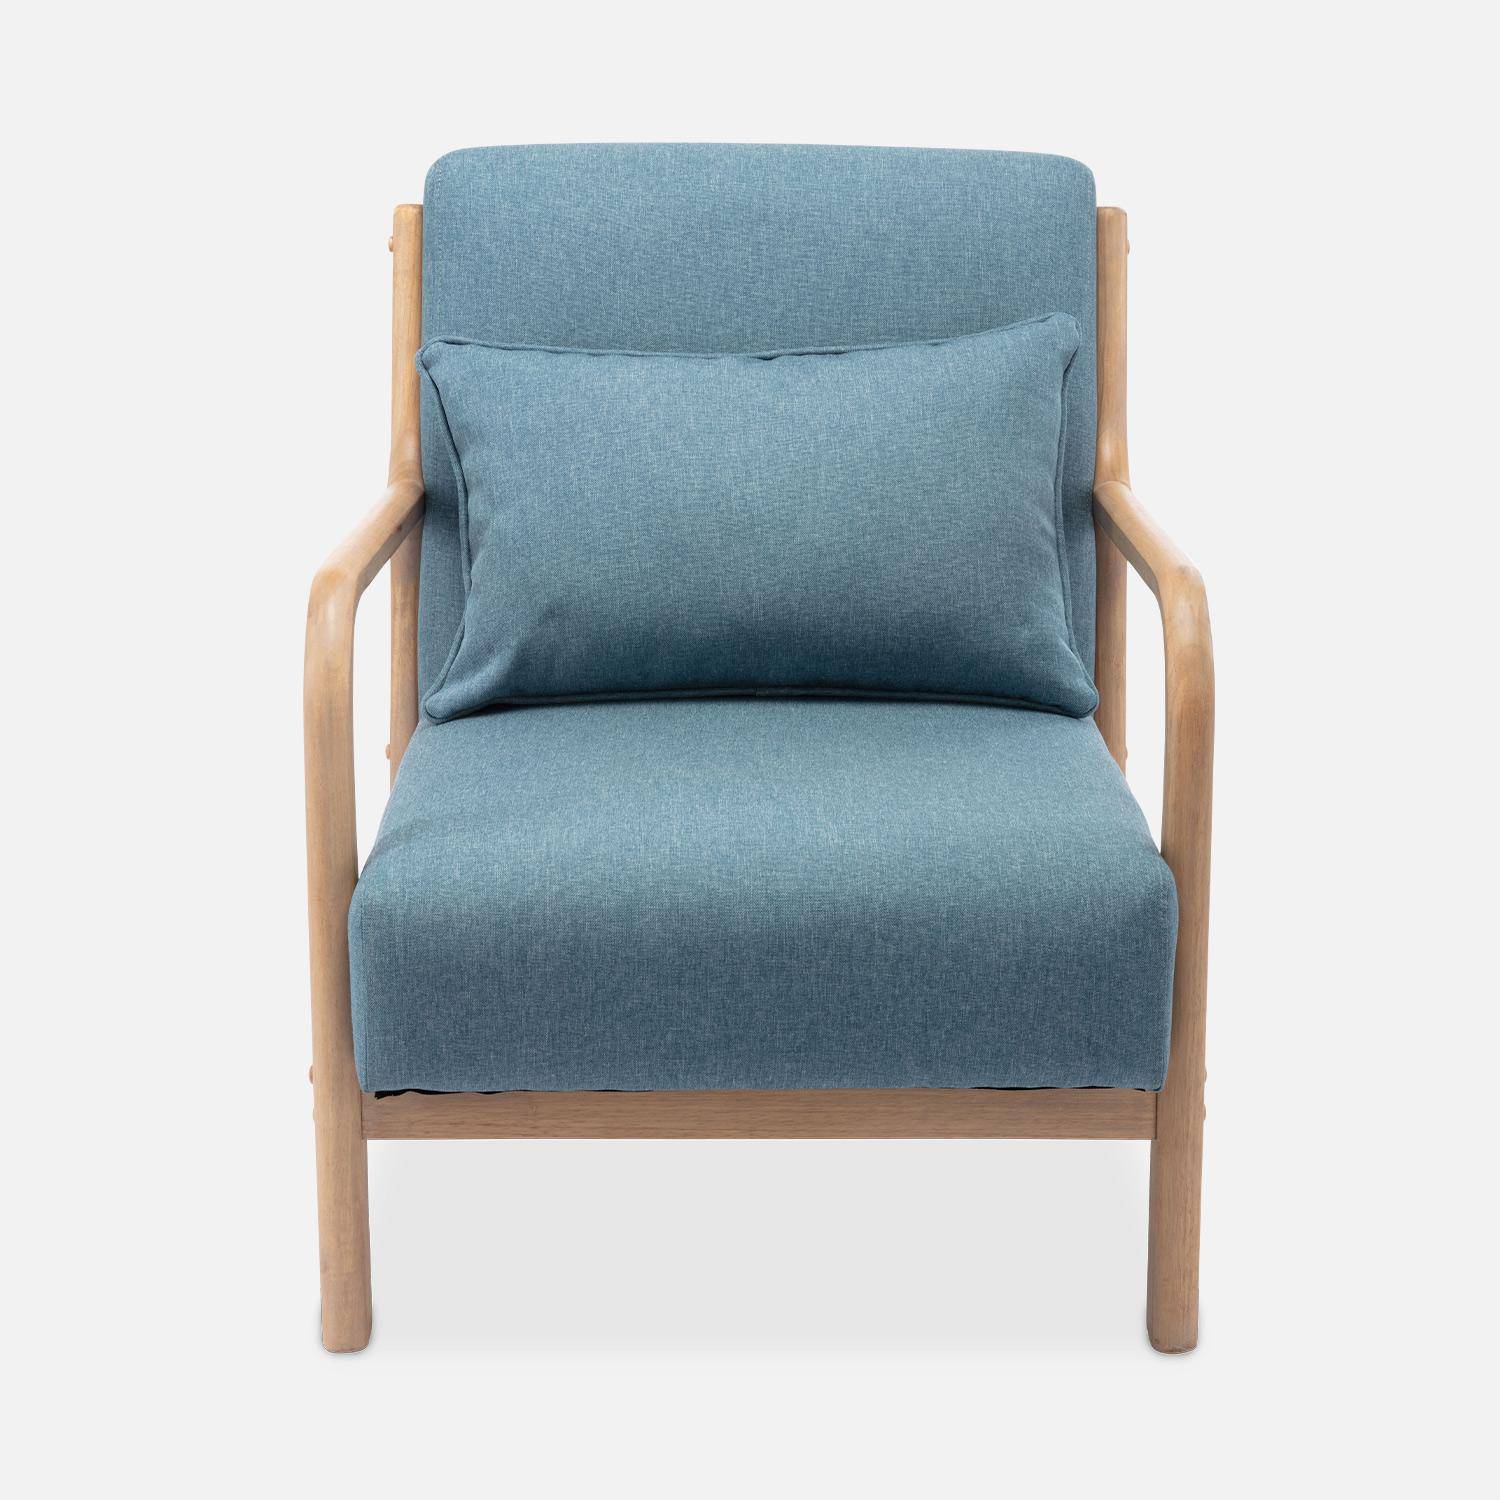 Poltrona di design in legno e tessuto, 1 seduta fissa diritta, gambe a compasso scandinave, blu Photo5